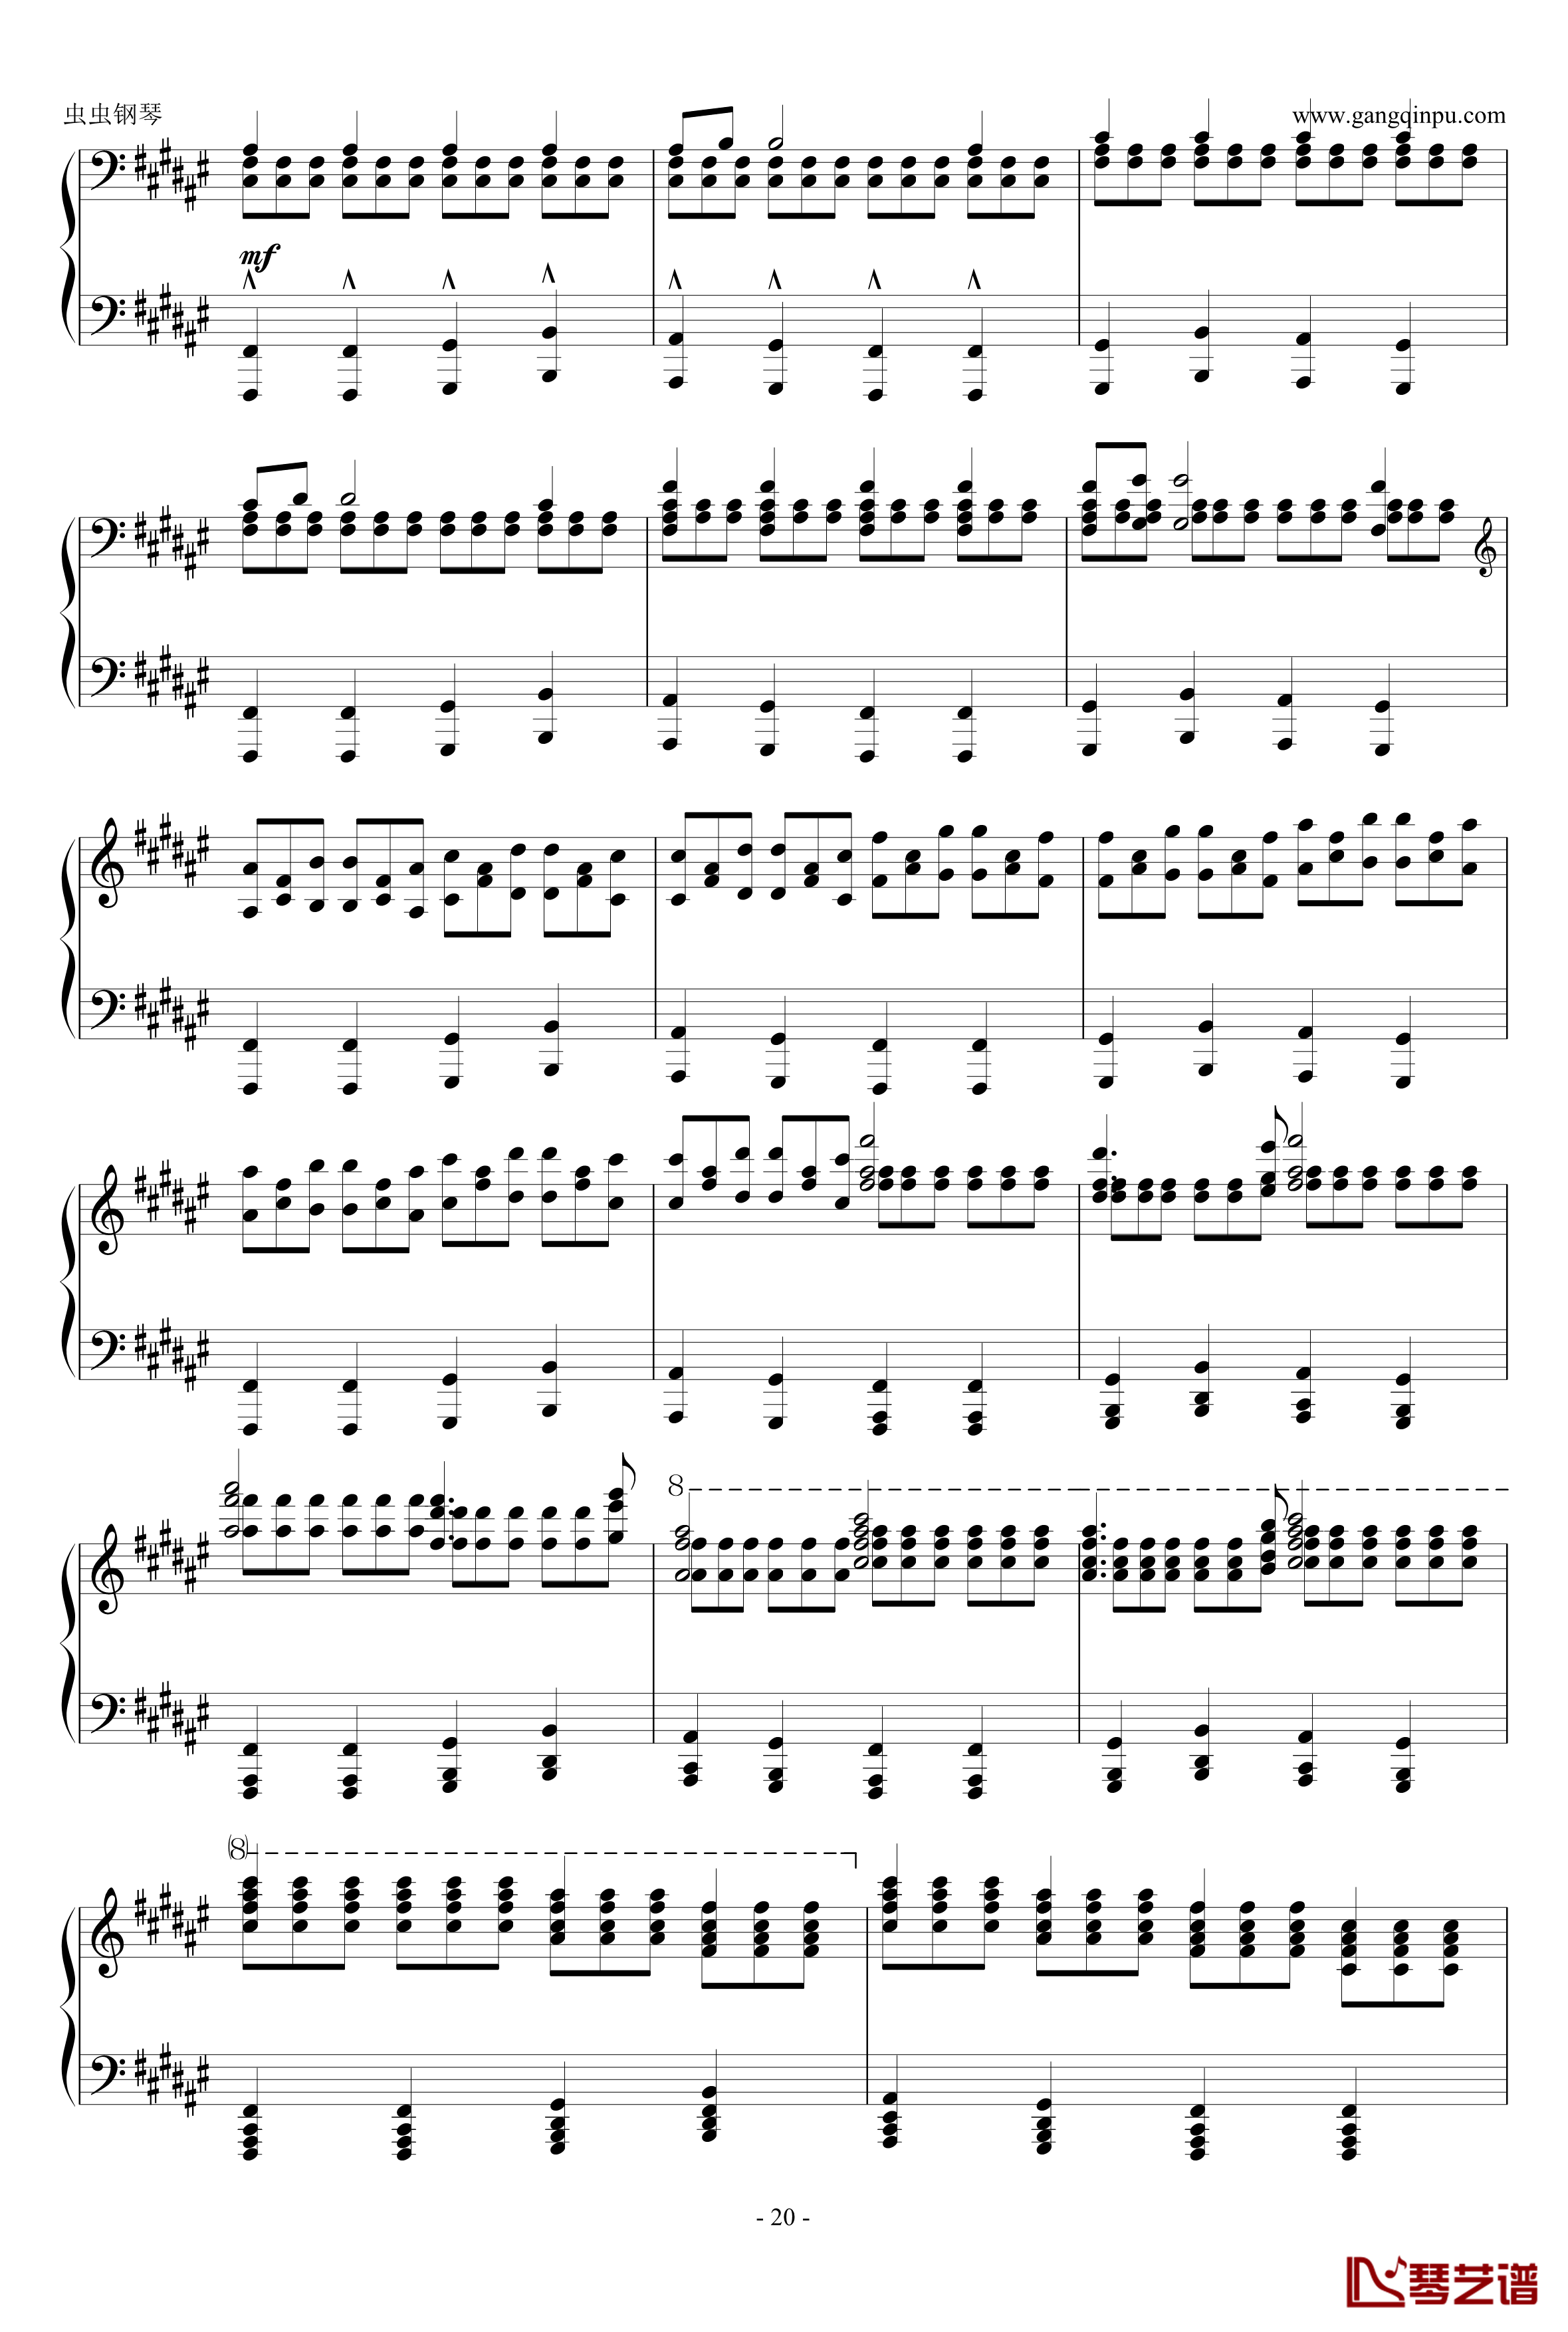 大奏鸣曲第二乐章钢琴谱-新年献礼-阿尔坎20